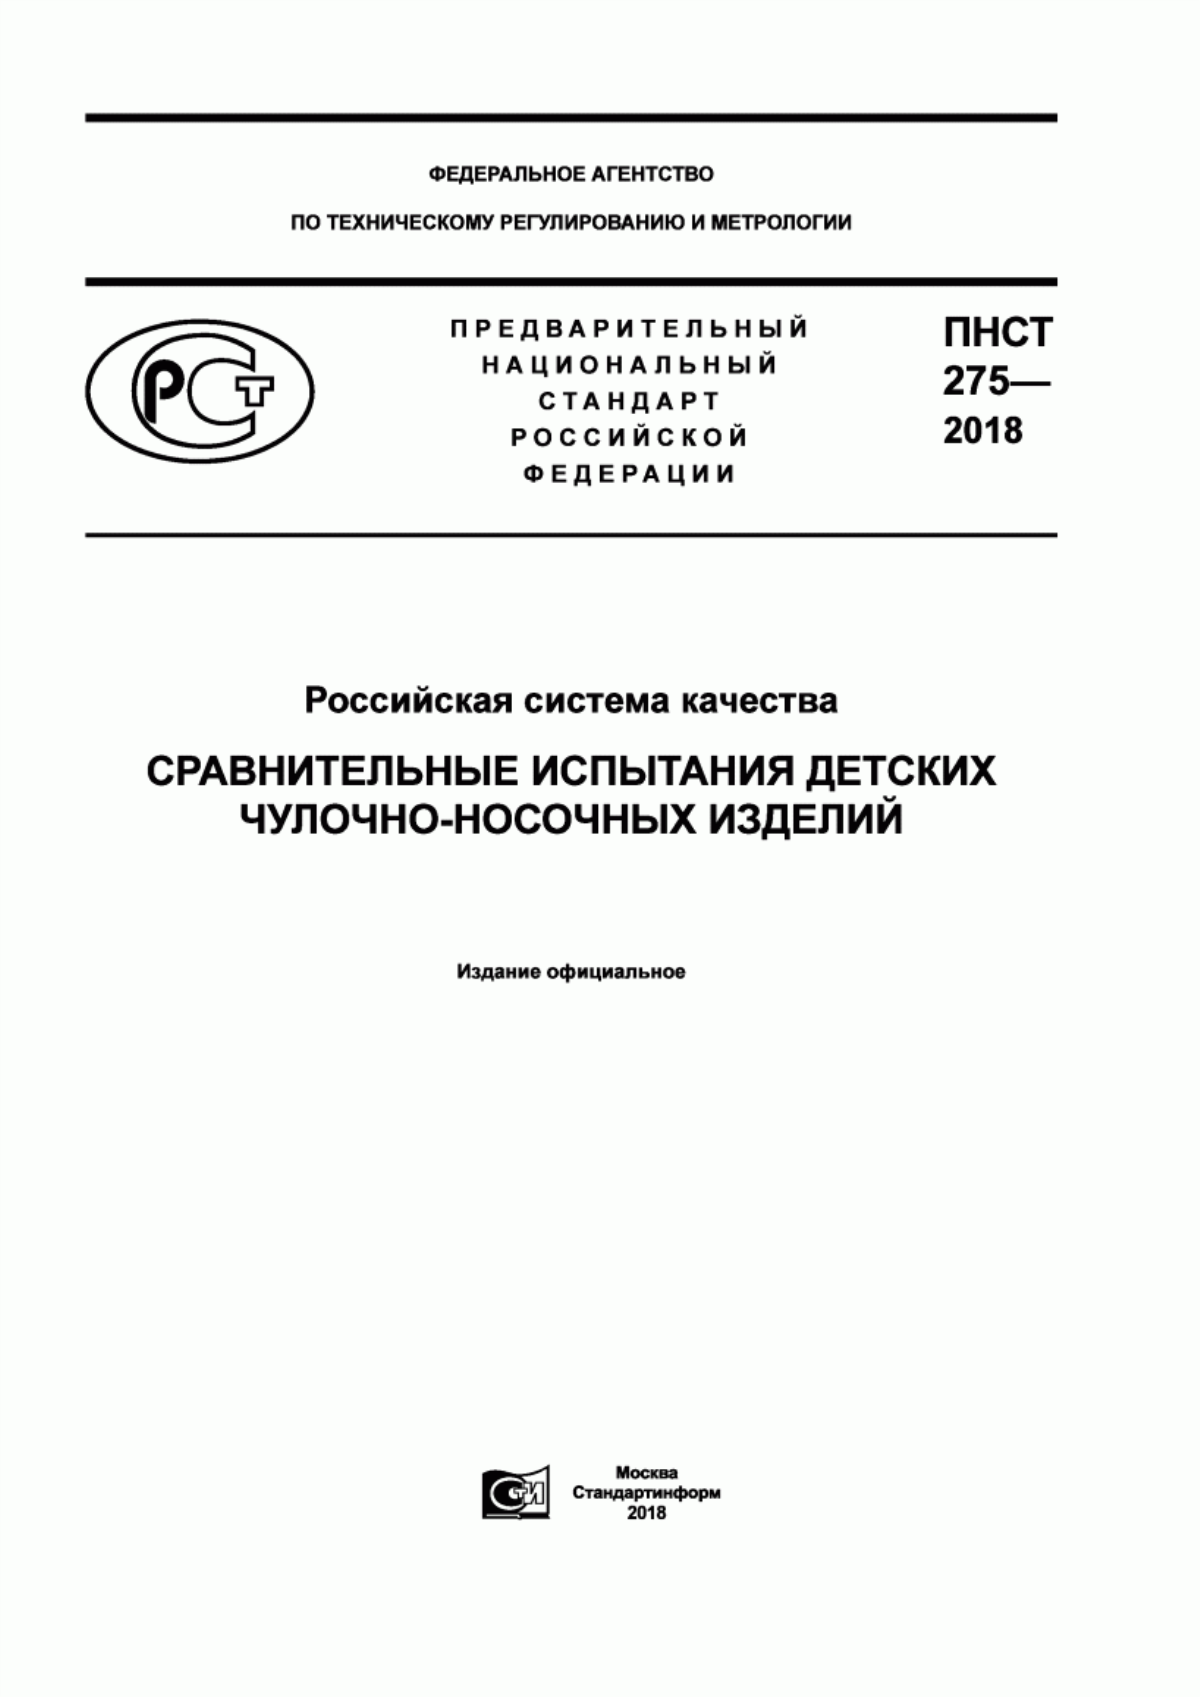 ПНСТ 275-2018 Российская система качества. Сравнительные испытания детских чулочно-носочных изделий